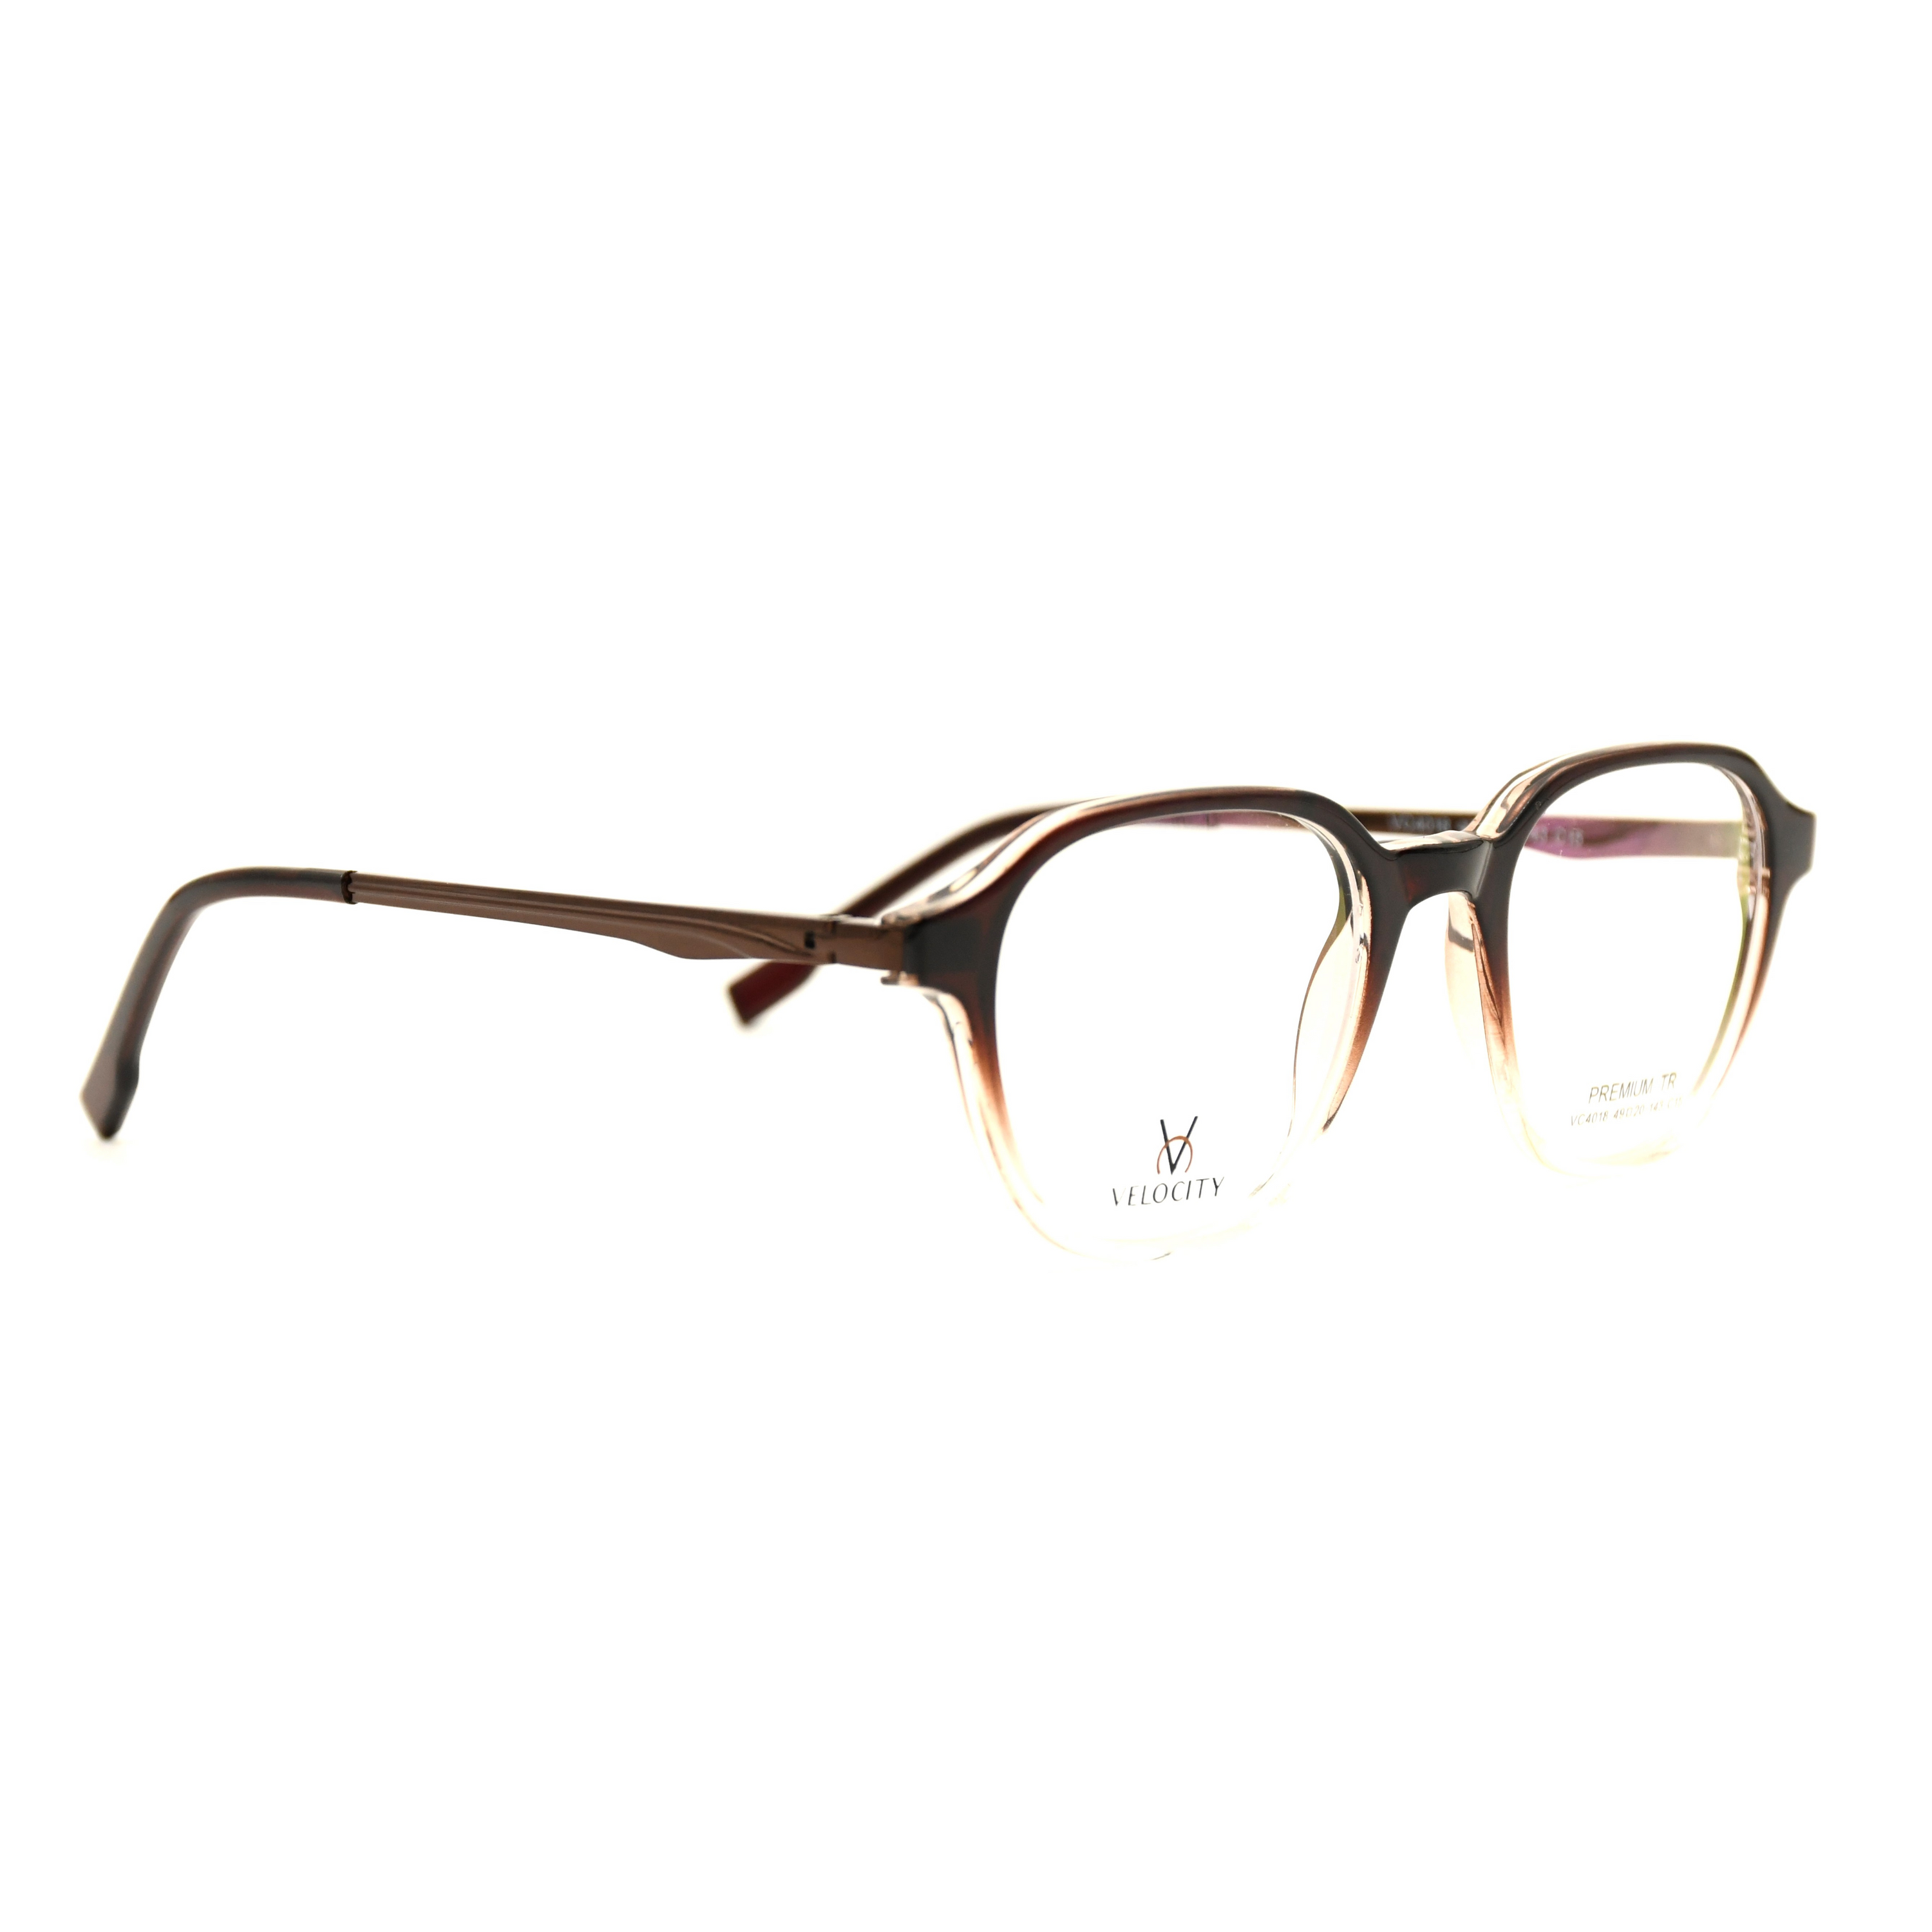 Velocity Rectangle Full Rim Eyeglasses - 4018-C15